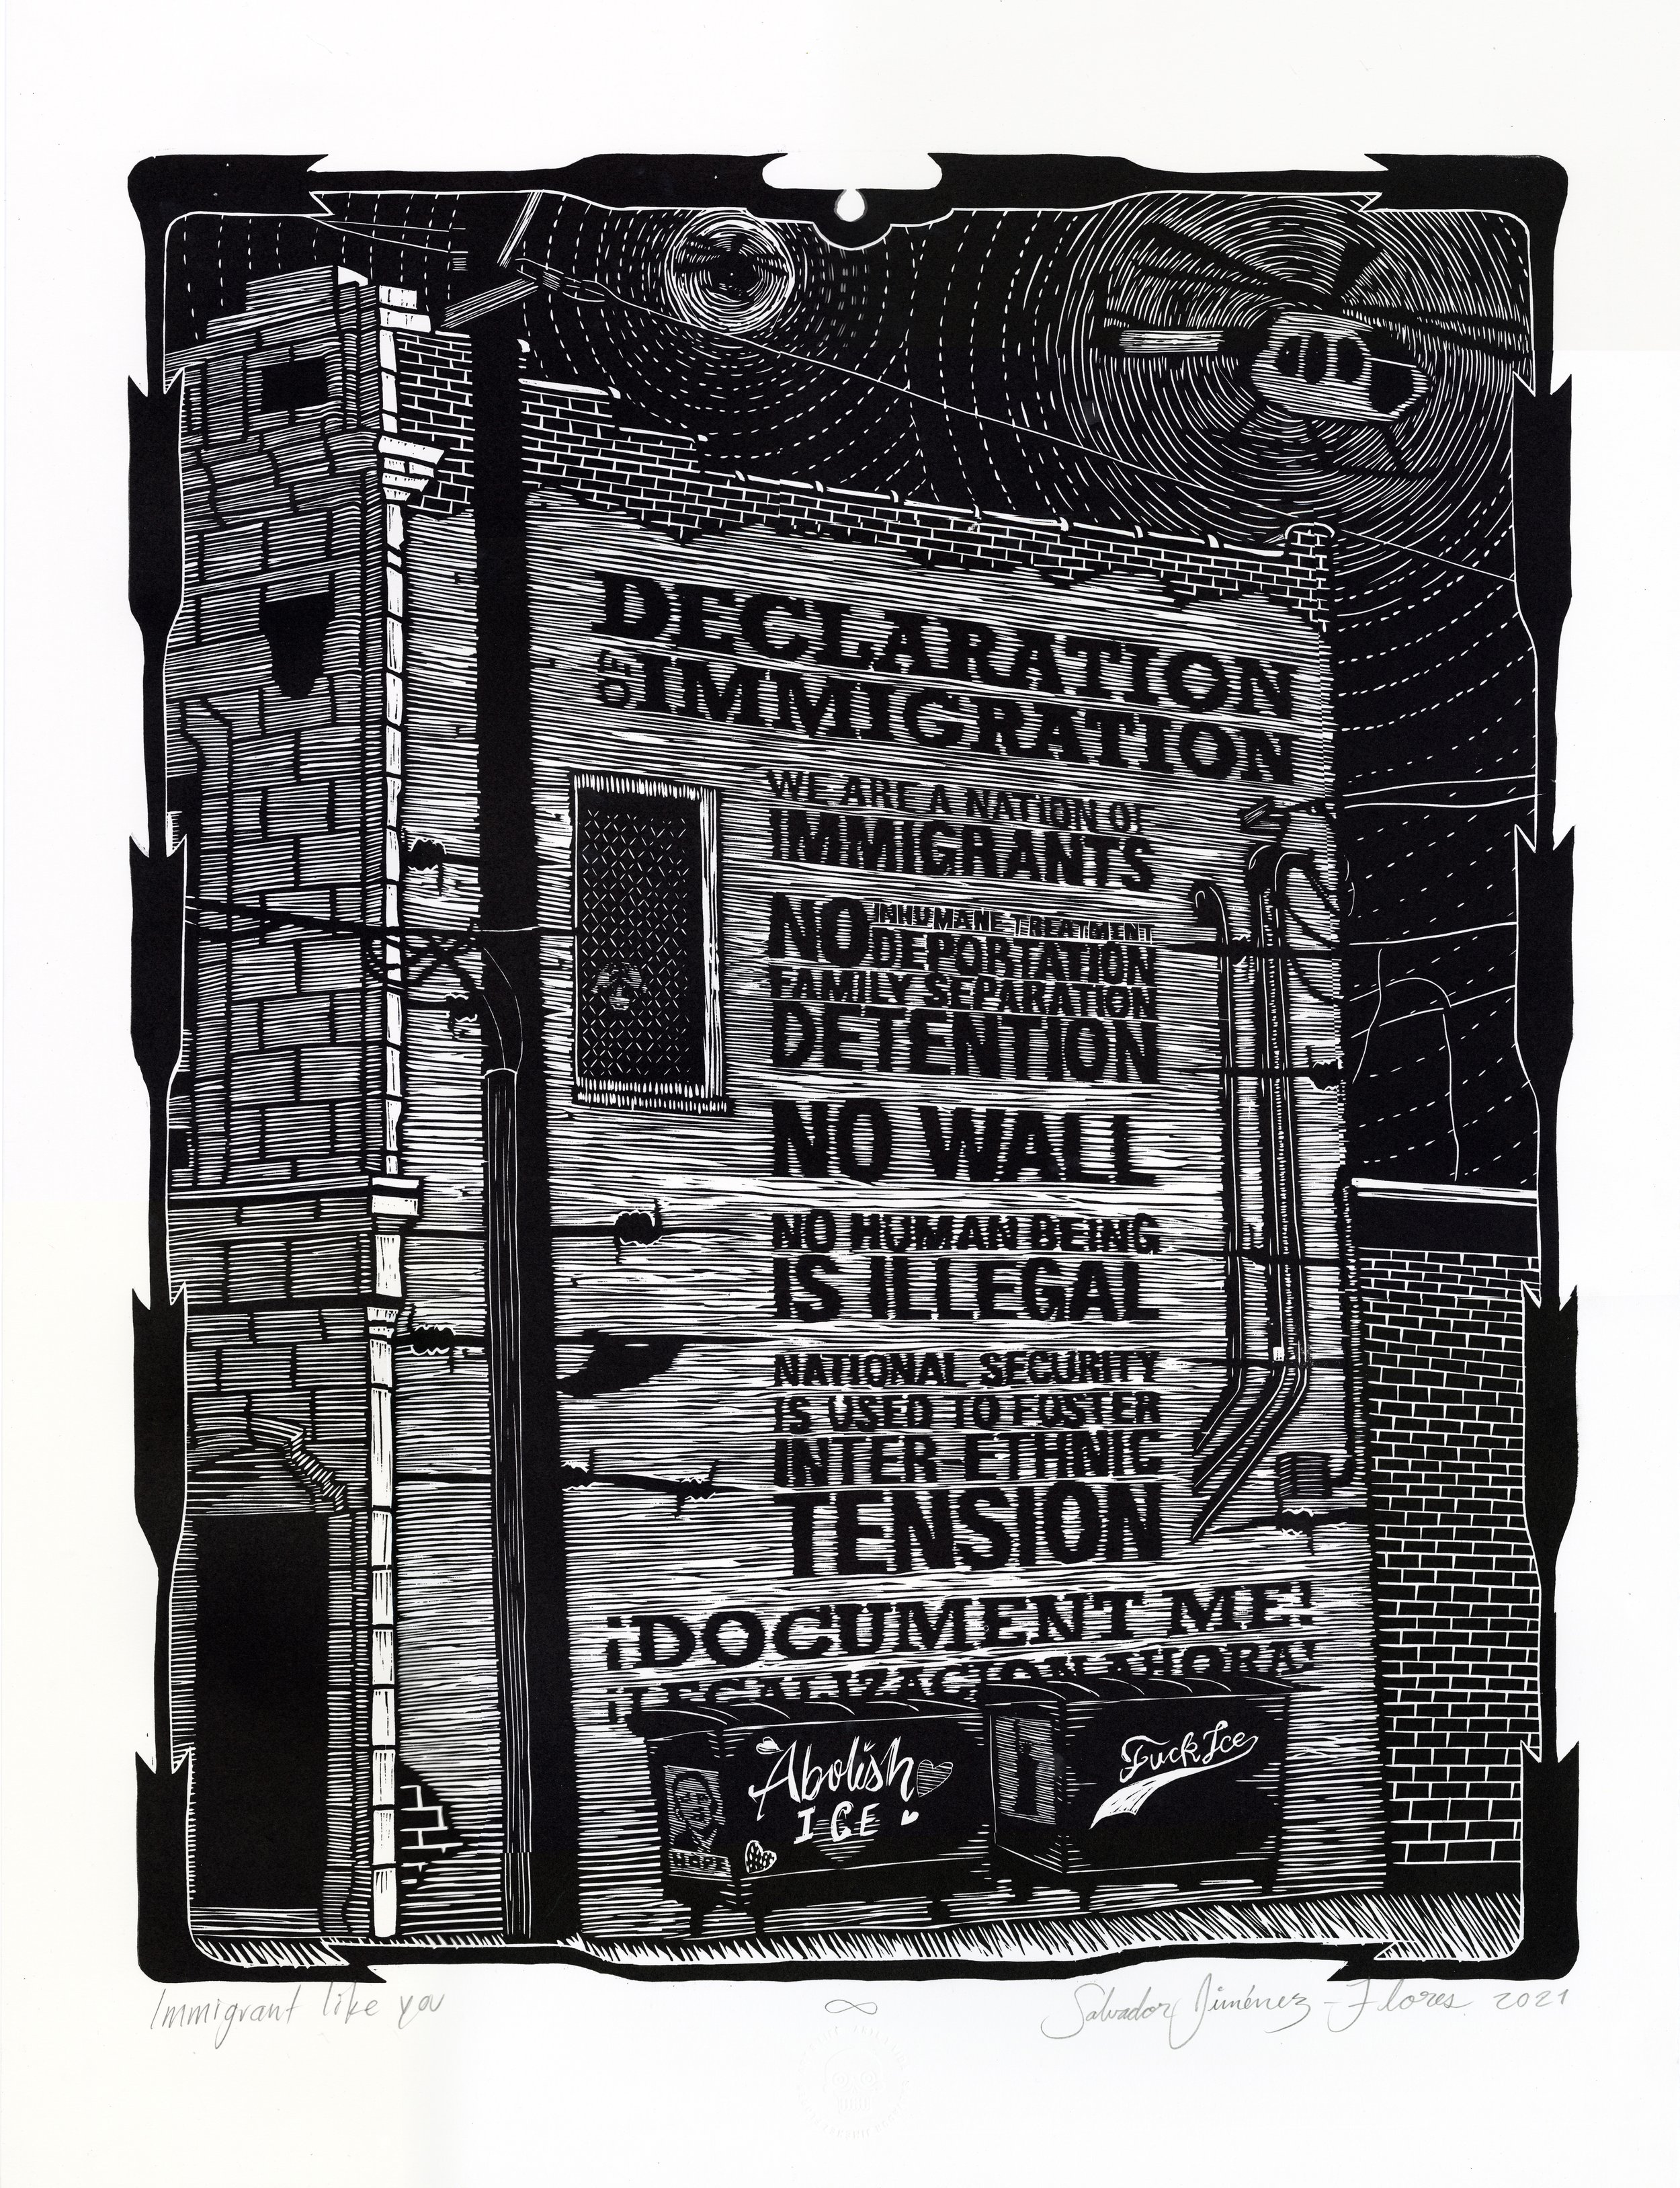 Inmigrante como tú, homenaje al mural de la declaración de inmigración / Immigrant Like You, Homage to the Declaration of Immigration Mural